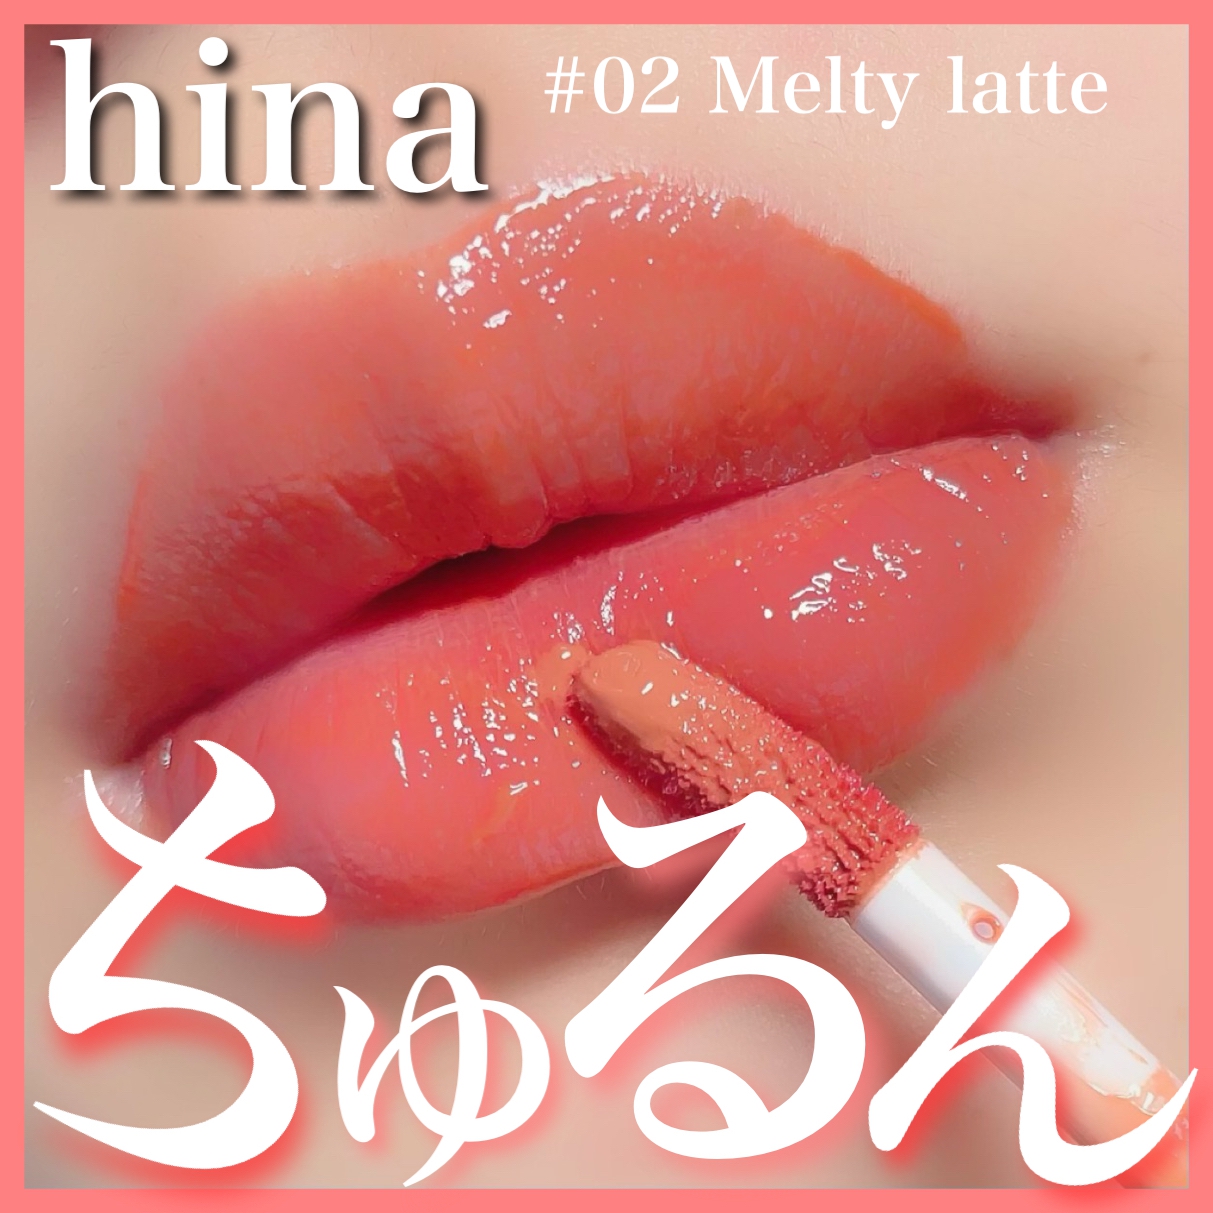 hina cosmetics(ヒナコスメティックス) チュルンリップティントの良い点・メリットに関するここあさんの口コミ画像1